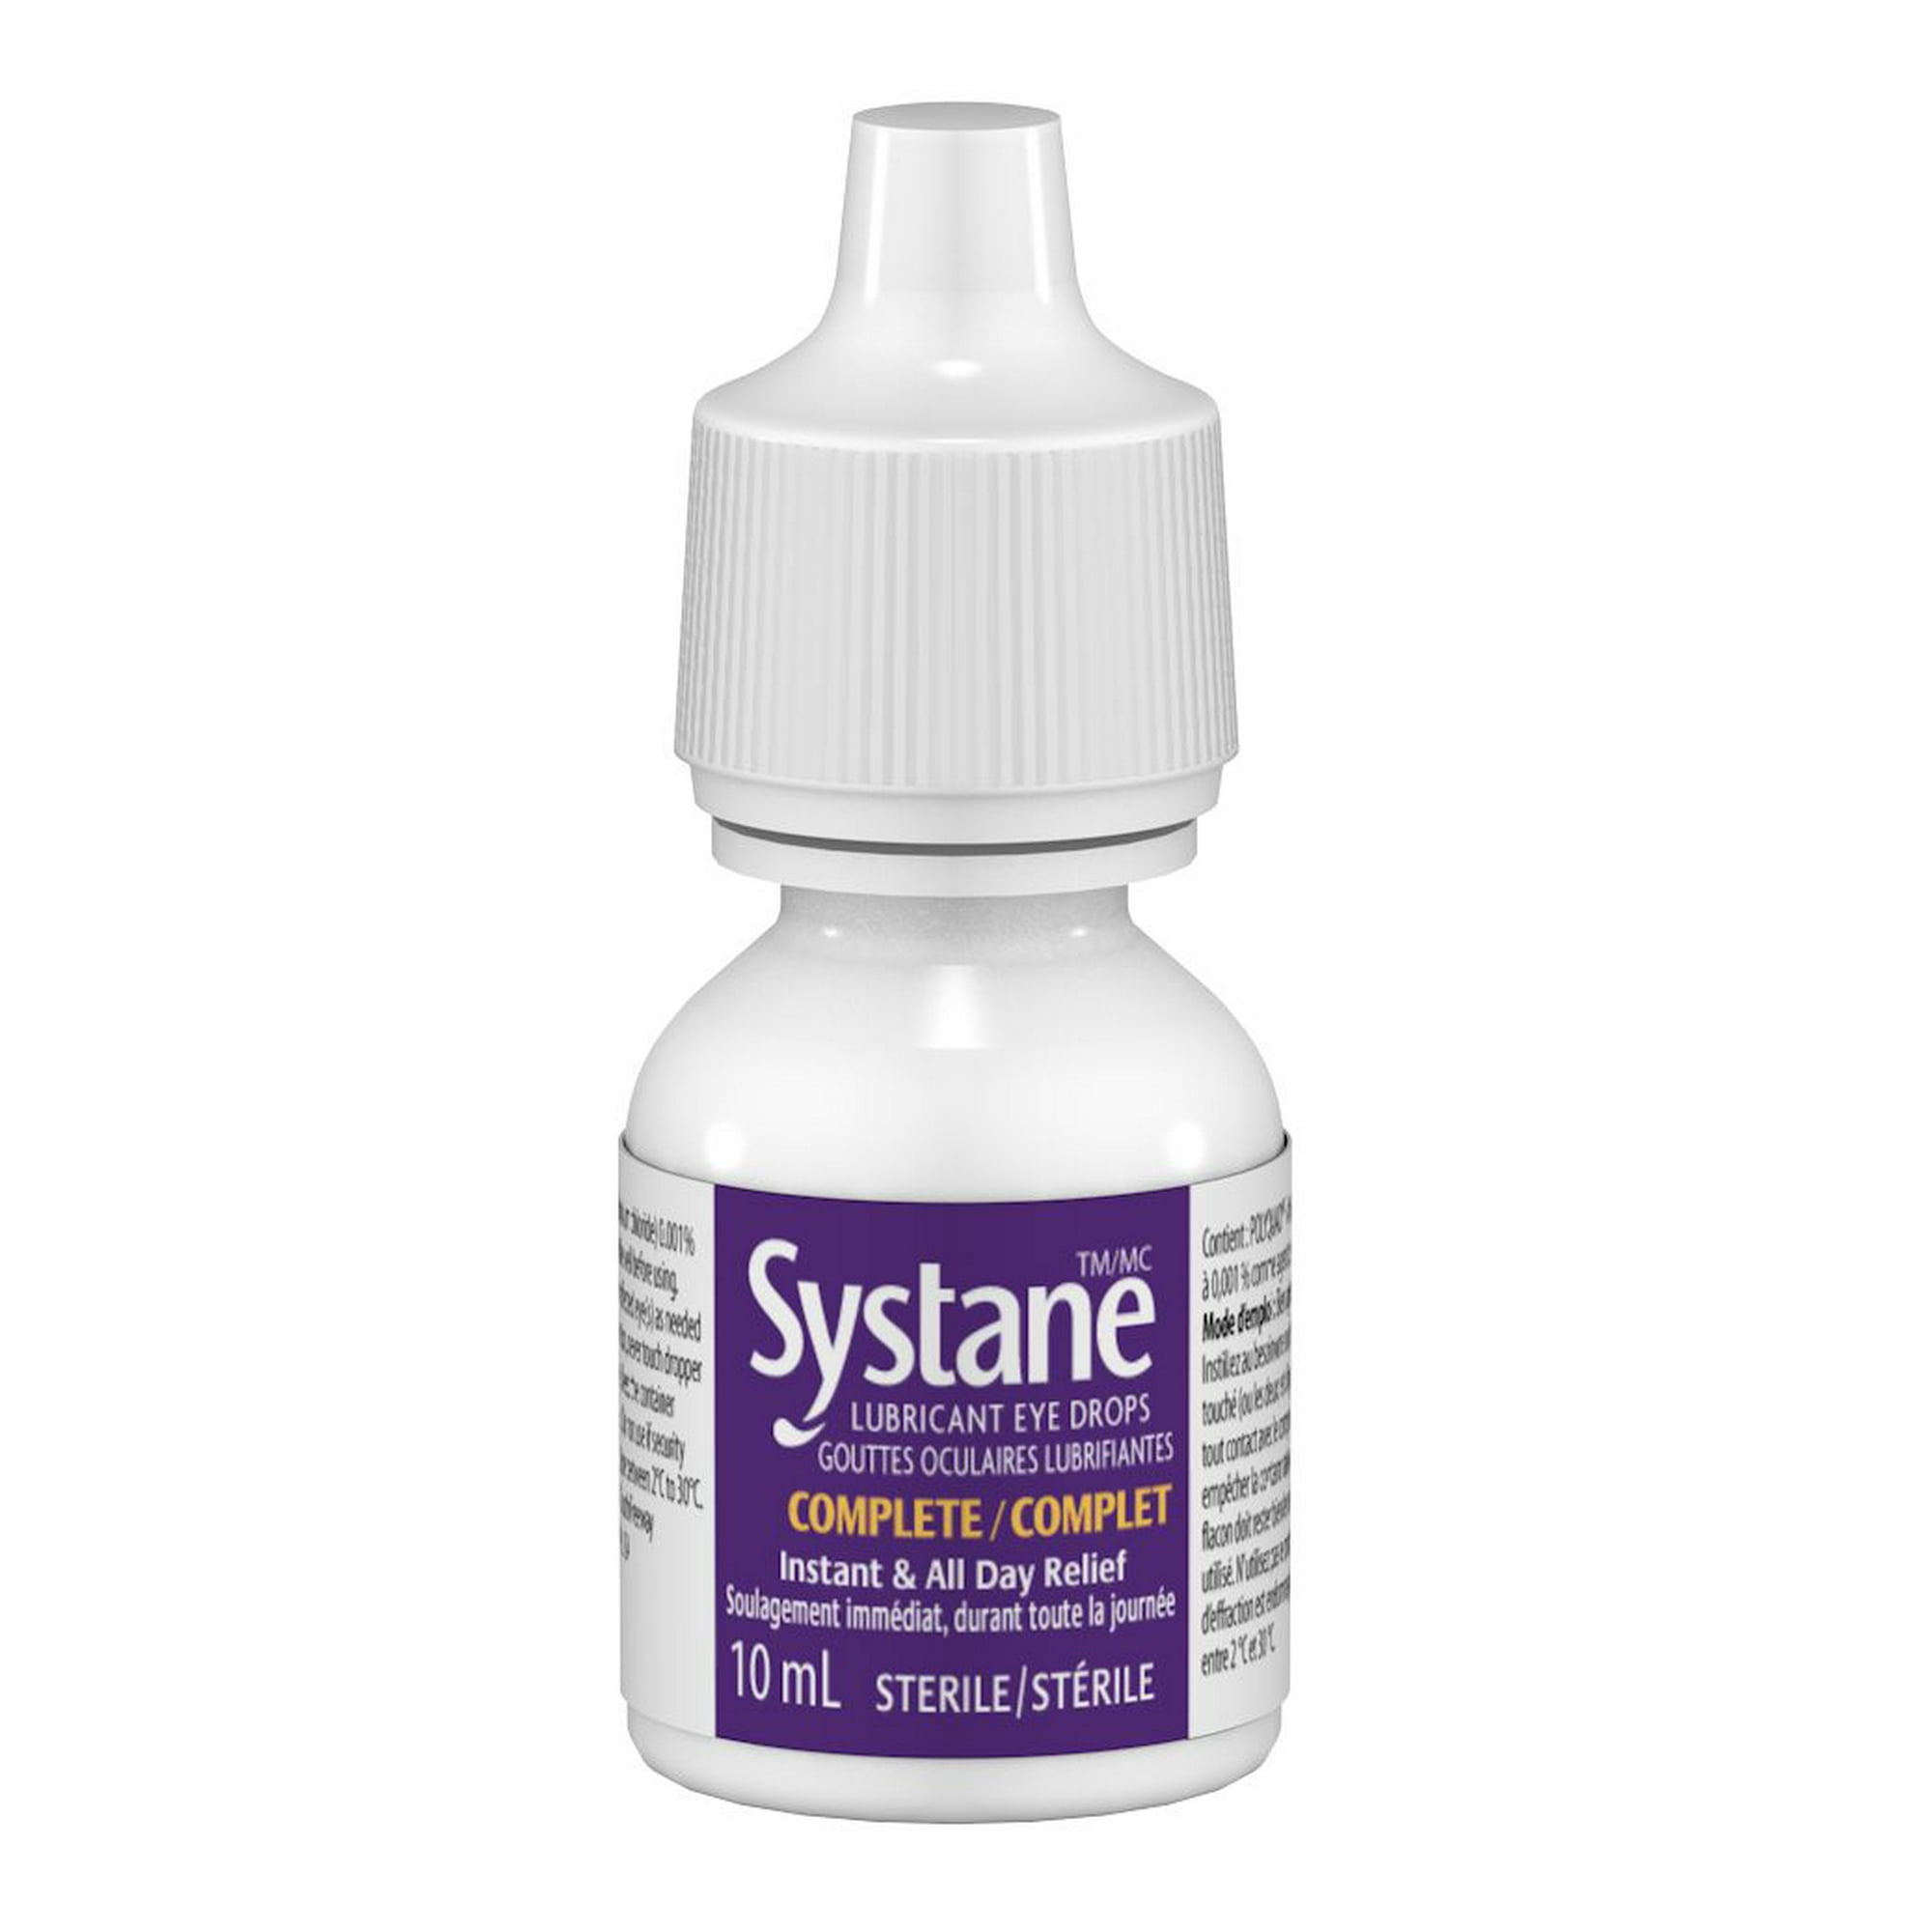 Systane Gel Nighttime Protection Eye Lubricant - 0.35 Fl Oz : Target